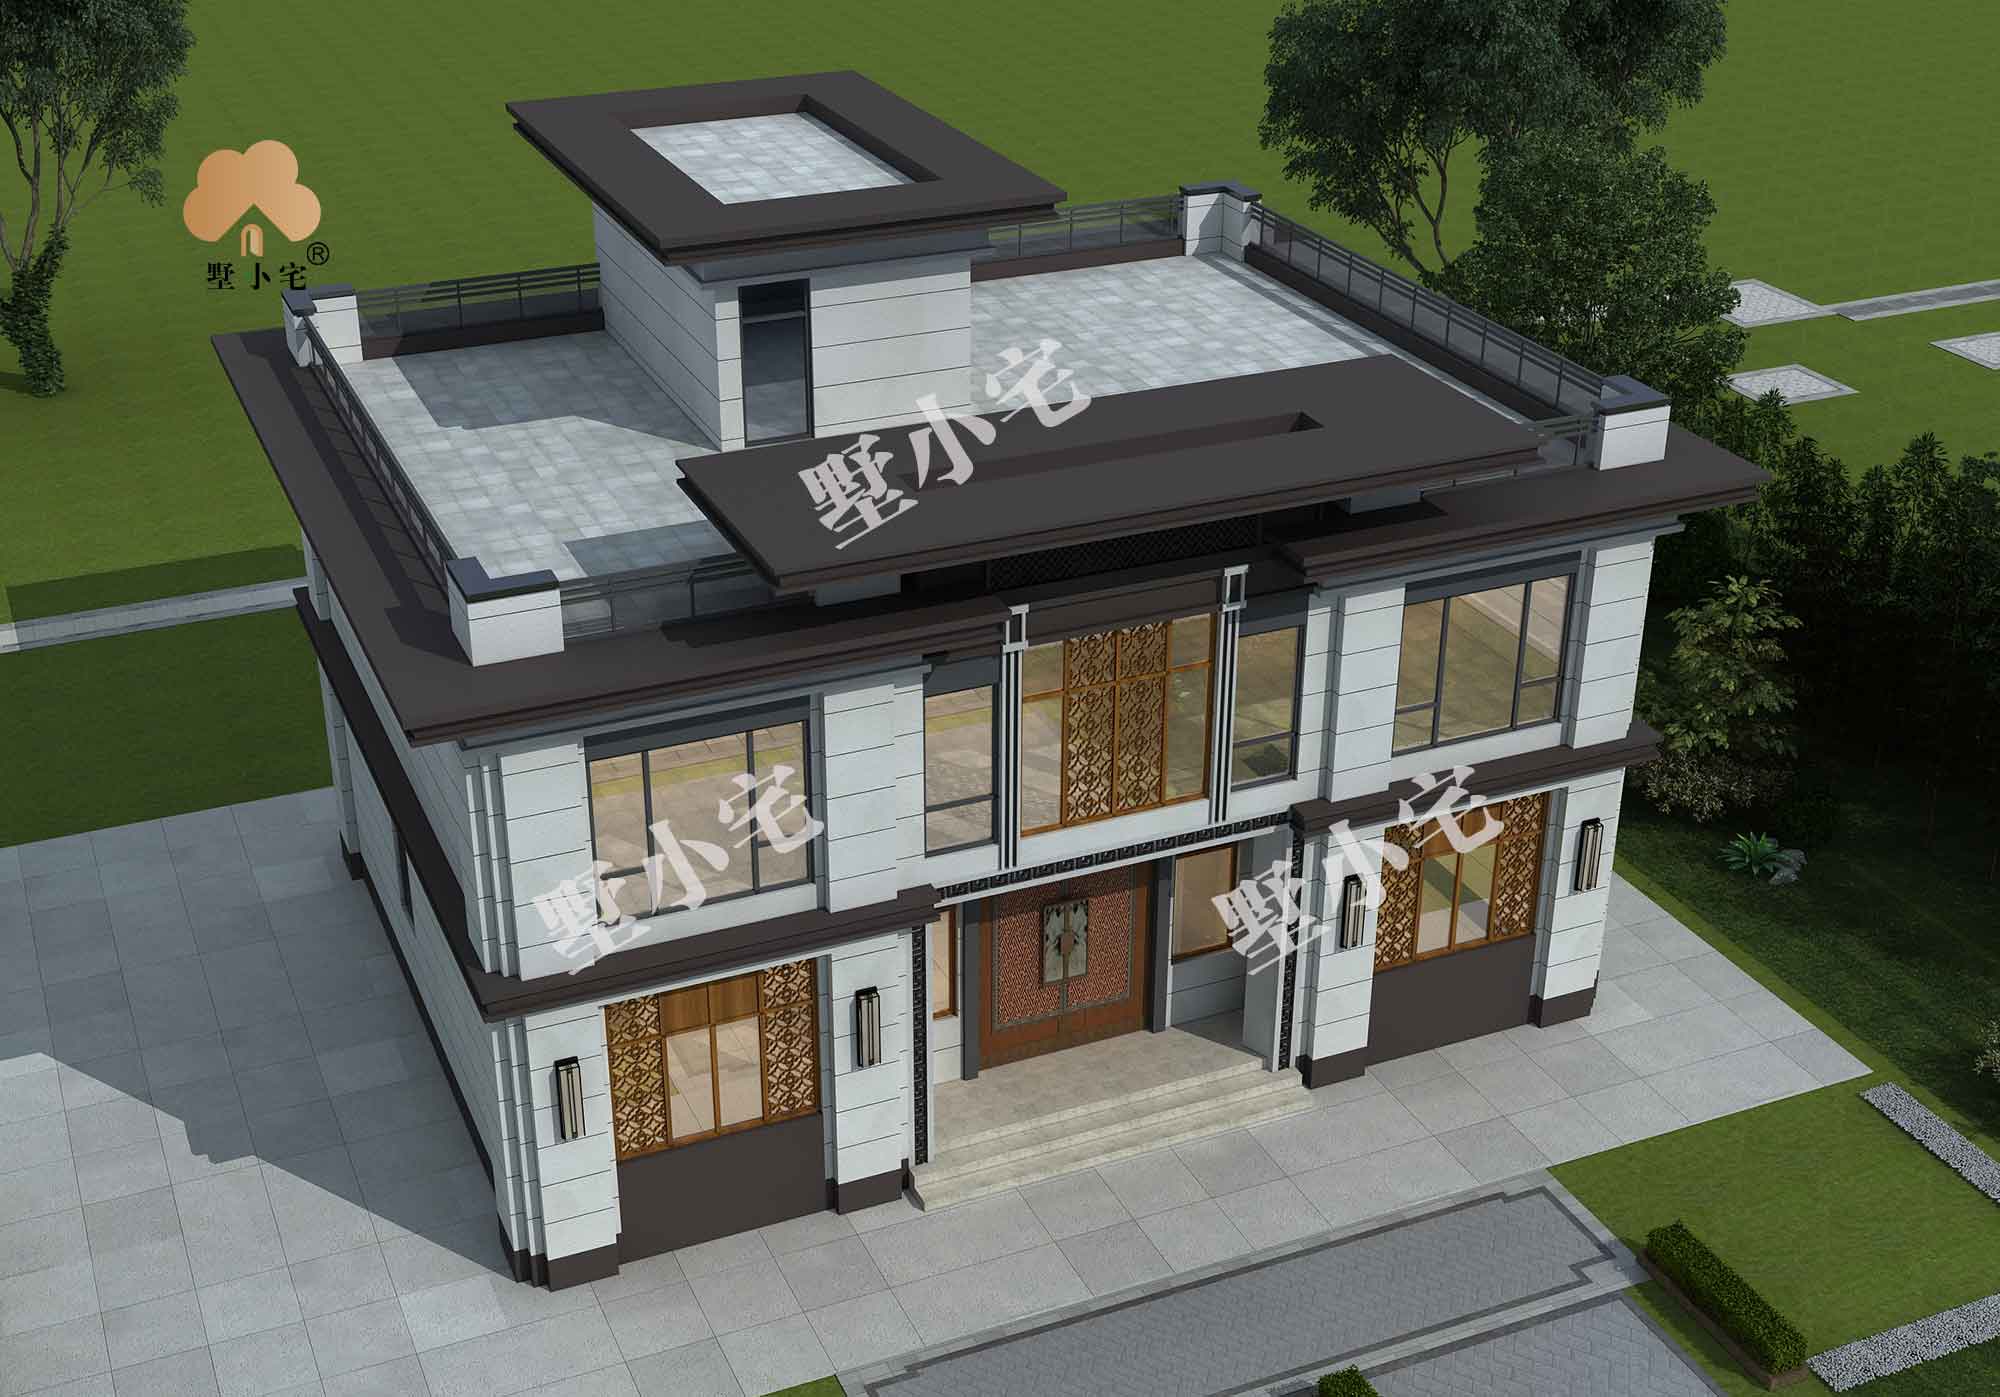 B610【农村平房】二层新中式经济型新农村自建房设计图